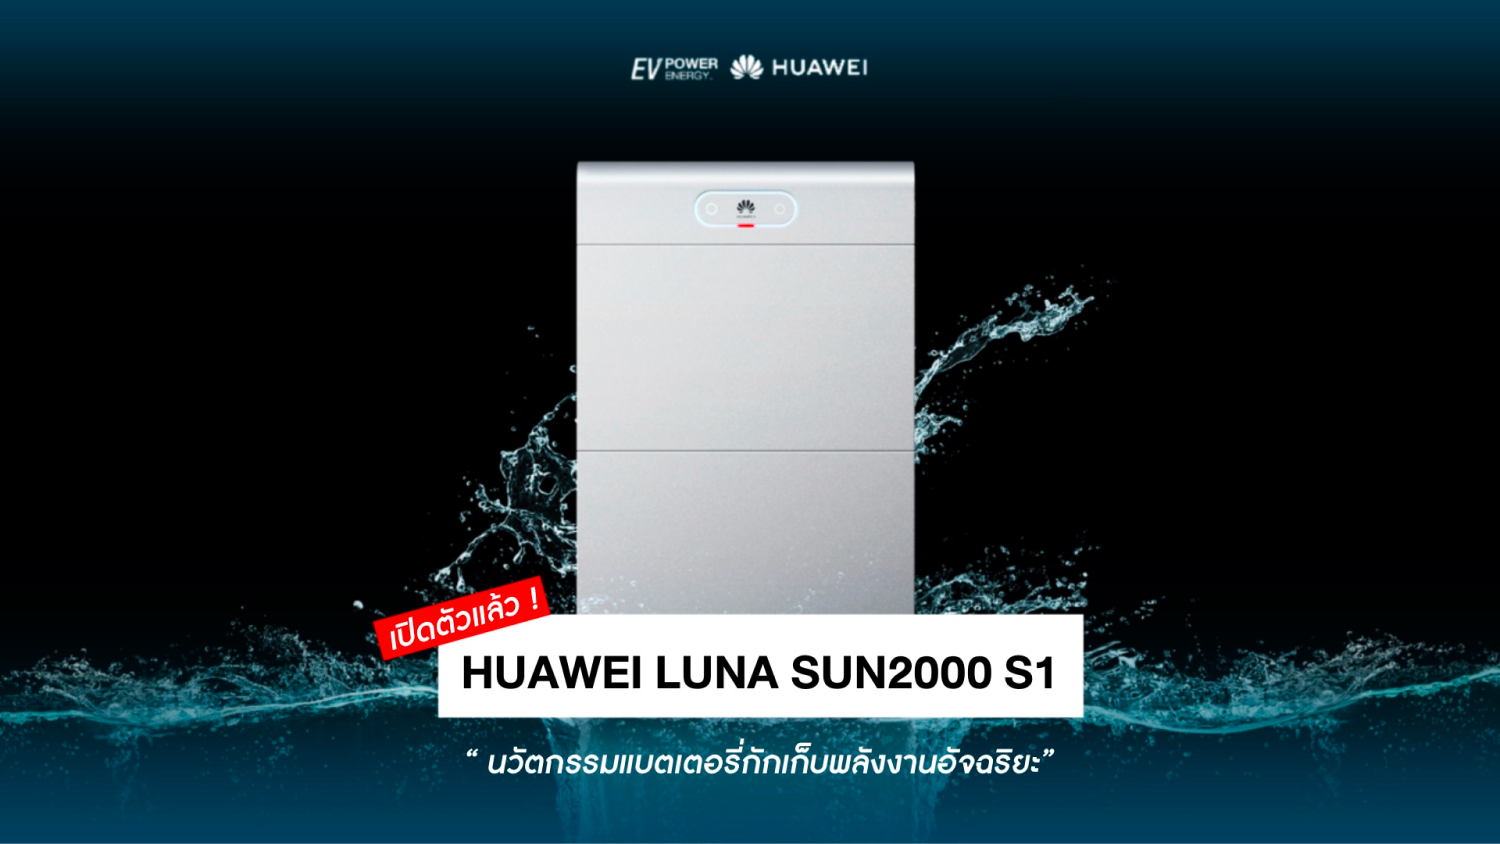 _Huawei ปลุกกระแสพลังงานสะอาด เปิดตัว “Huawei Luna SUN2000 S1” นวัตกรรมแบตเตอรี่กักเก็บพลังงานอัจฉริยะ 1